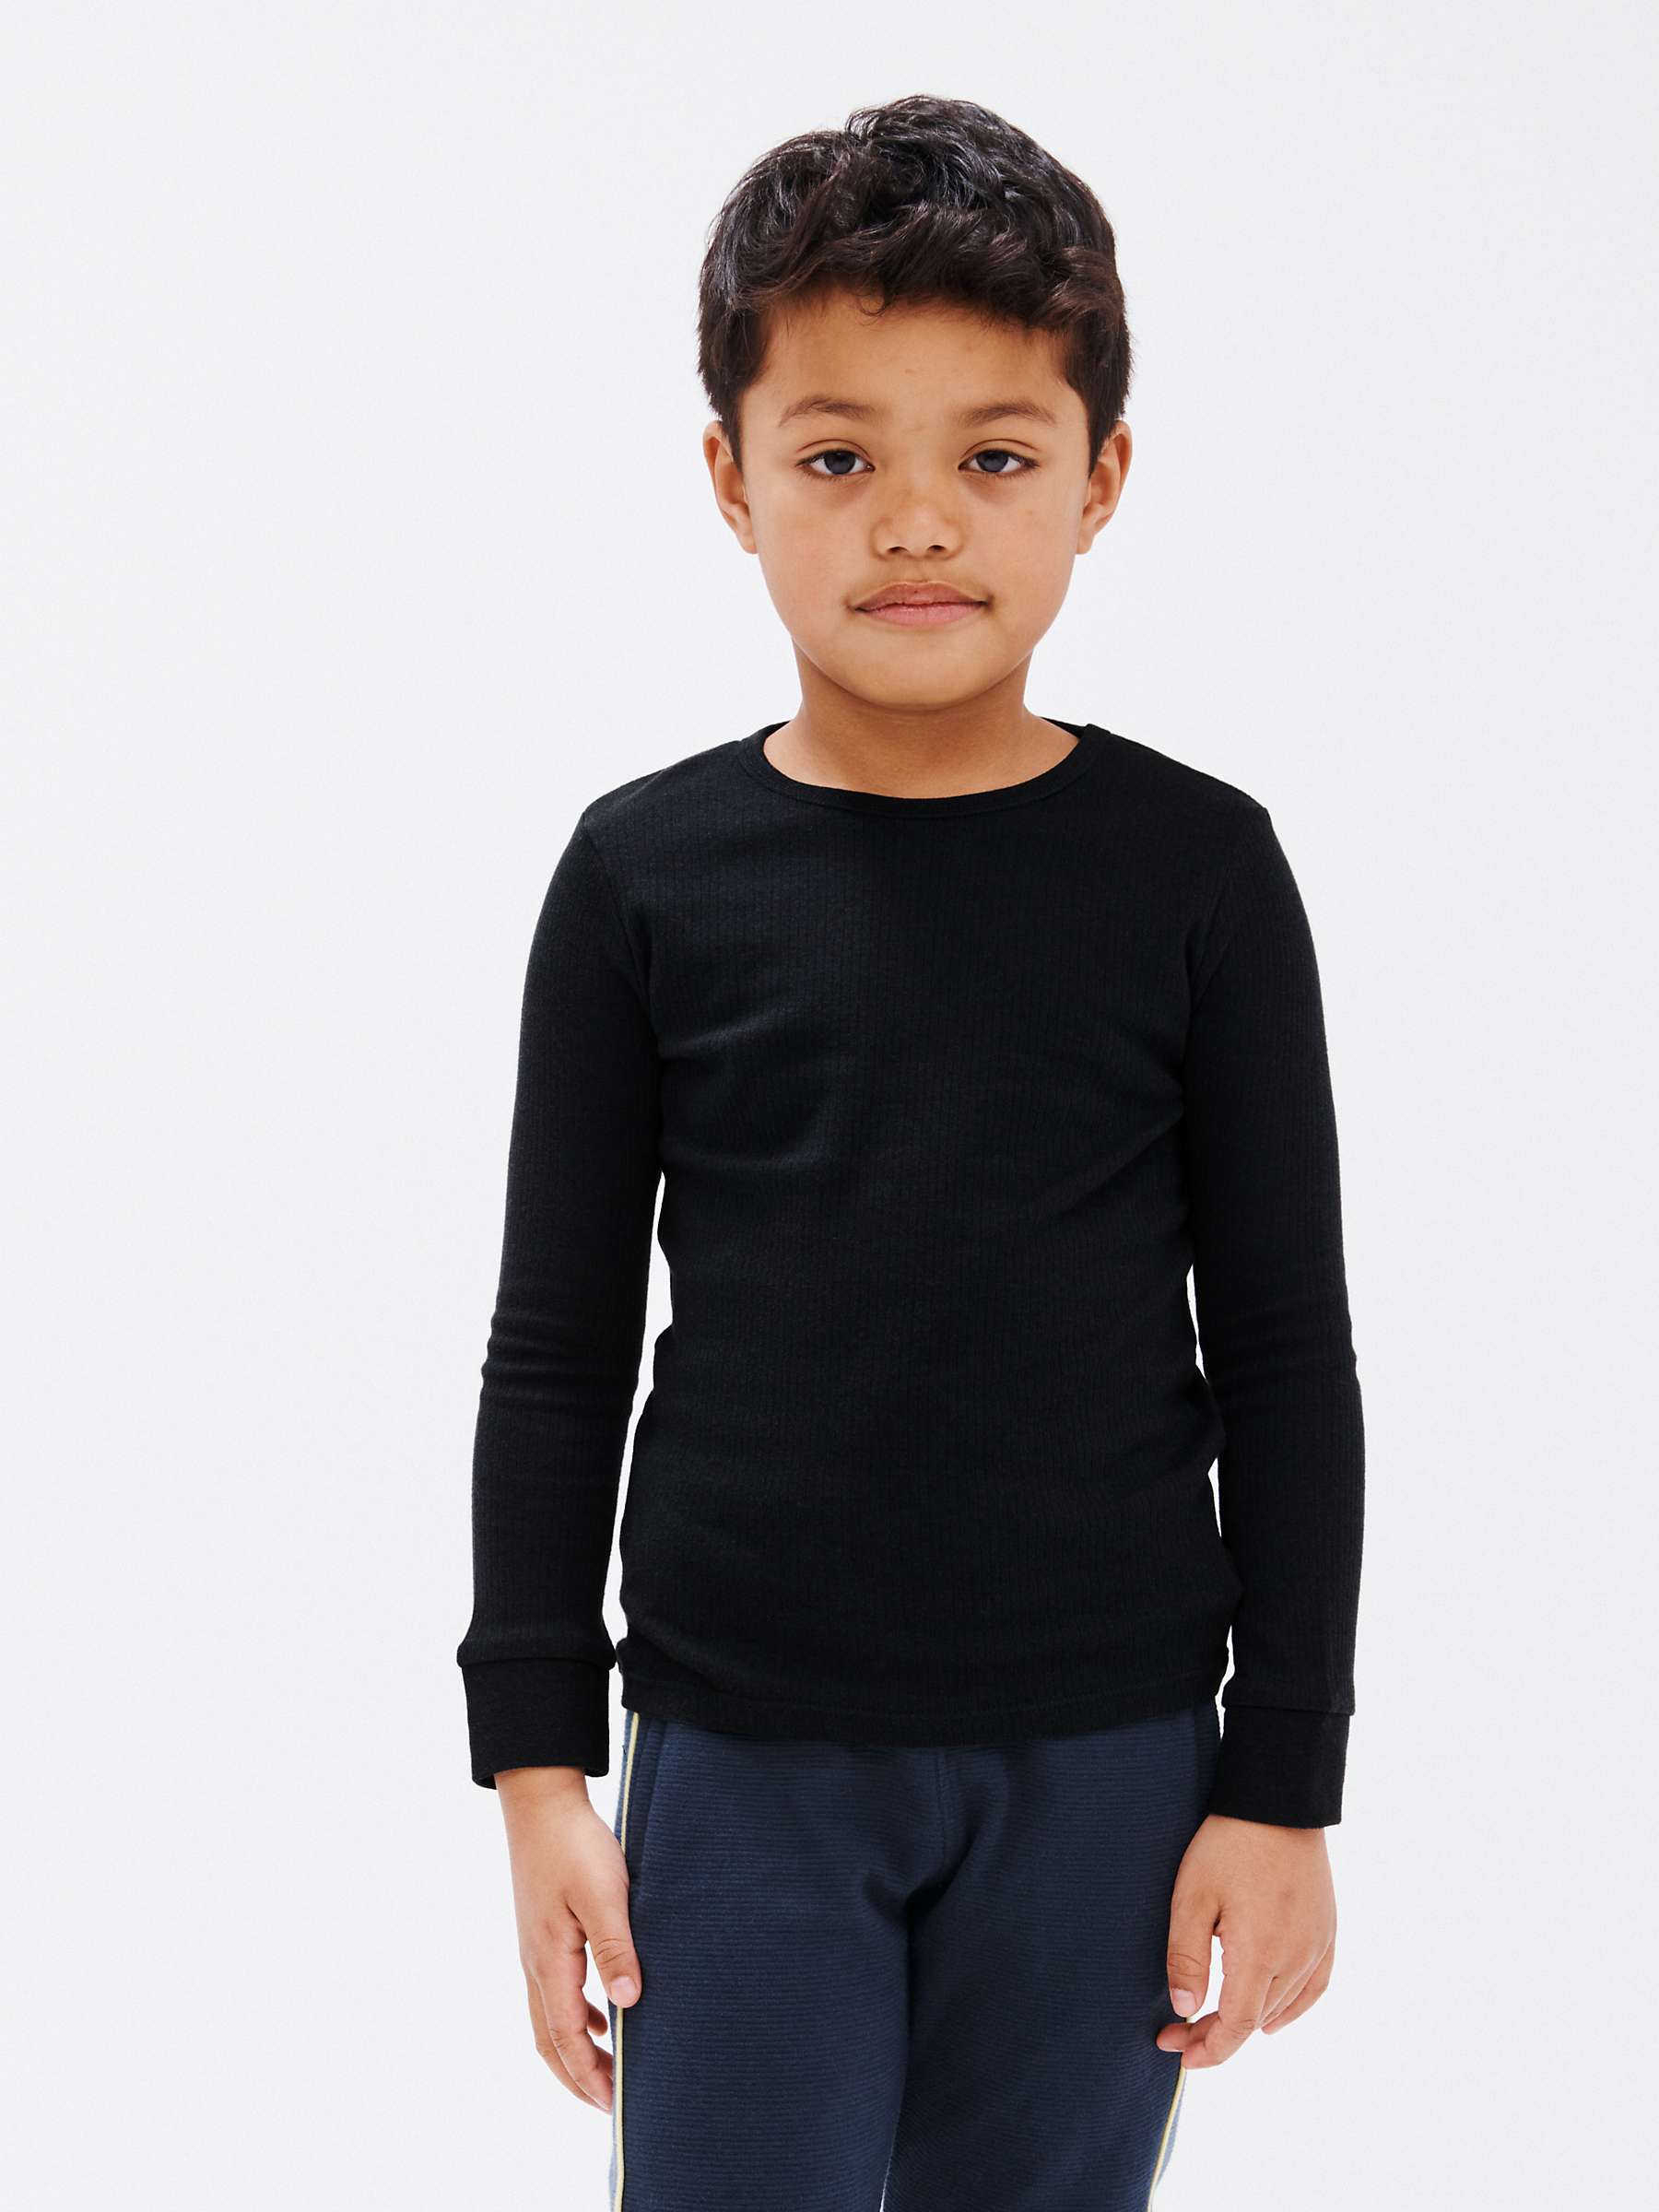 Buy John Lewis Kids' Long Sleeve Thermal Top, Pack of 2, Black Online at johnlewis.com